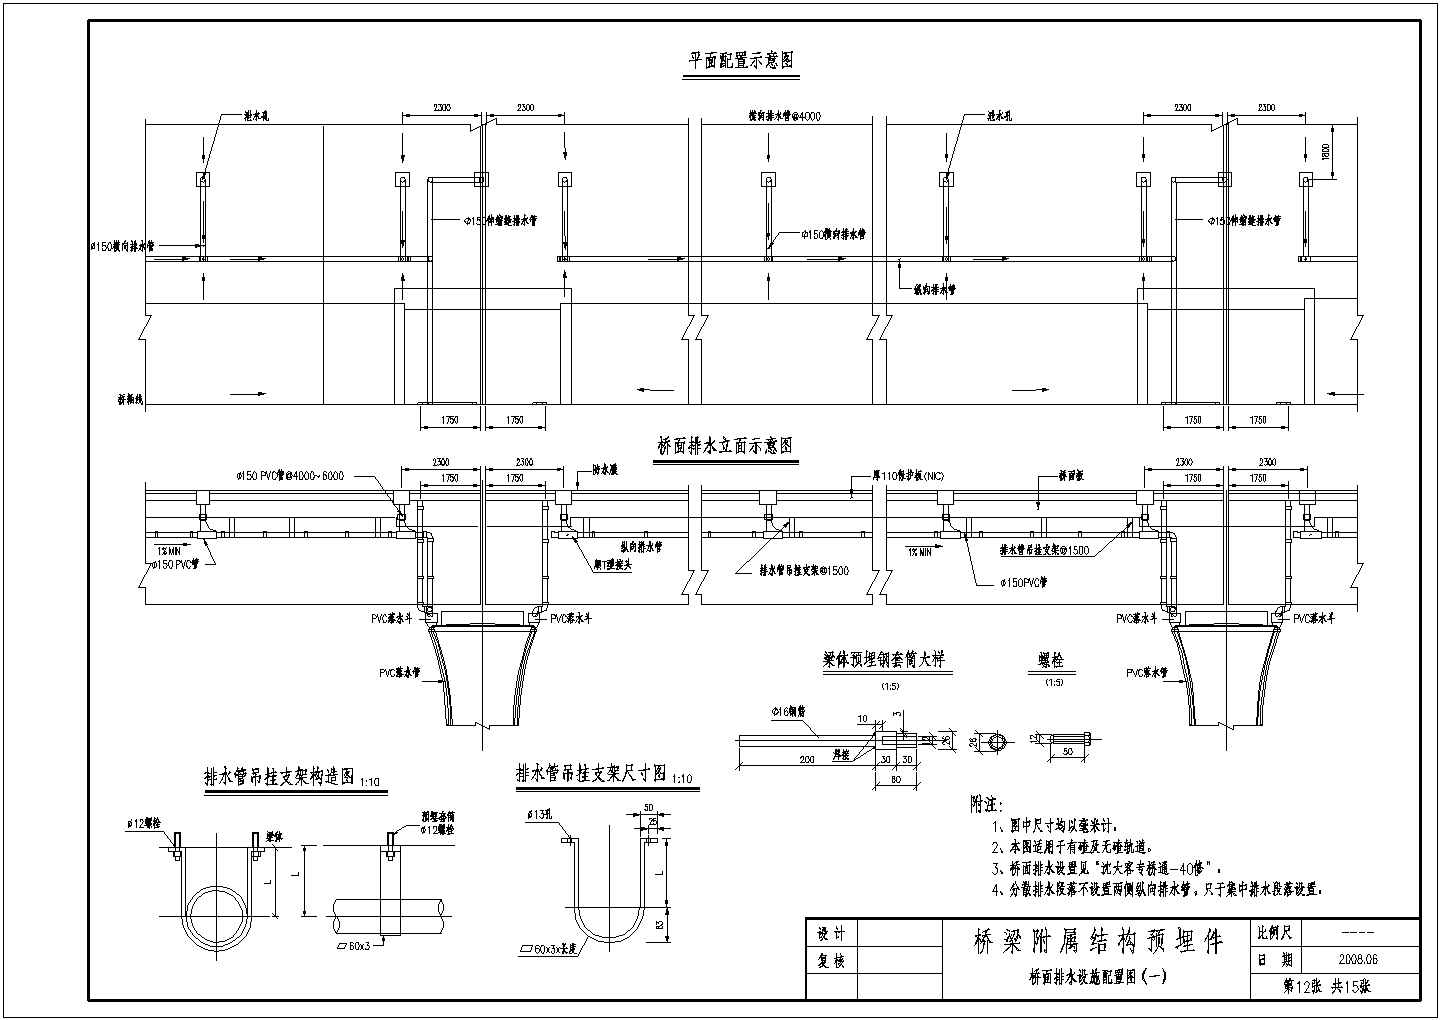 铁路客运专线桥梁附属结构预埋件桥面排水设施配置节点详图